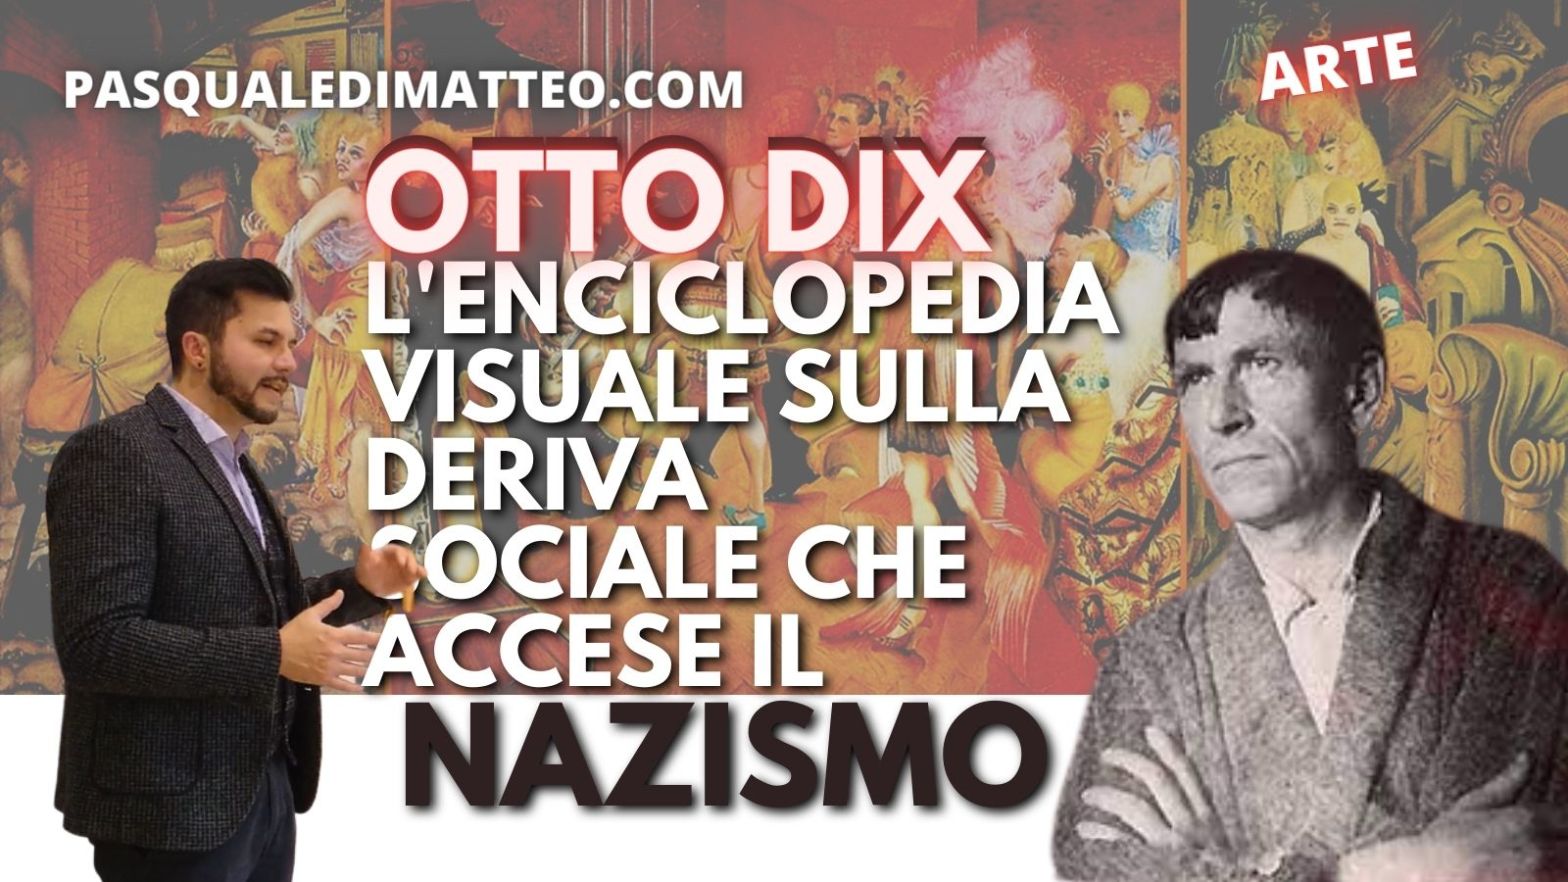 Copertina dell'articolo di Pasquale Di Matteo su Otto Dix